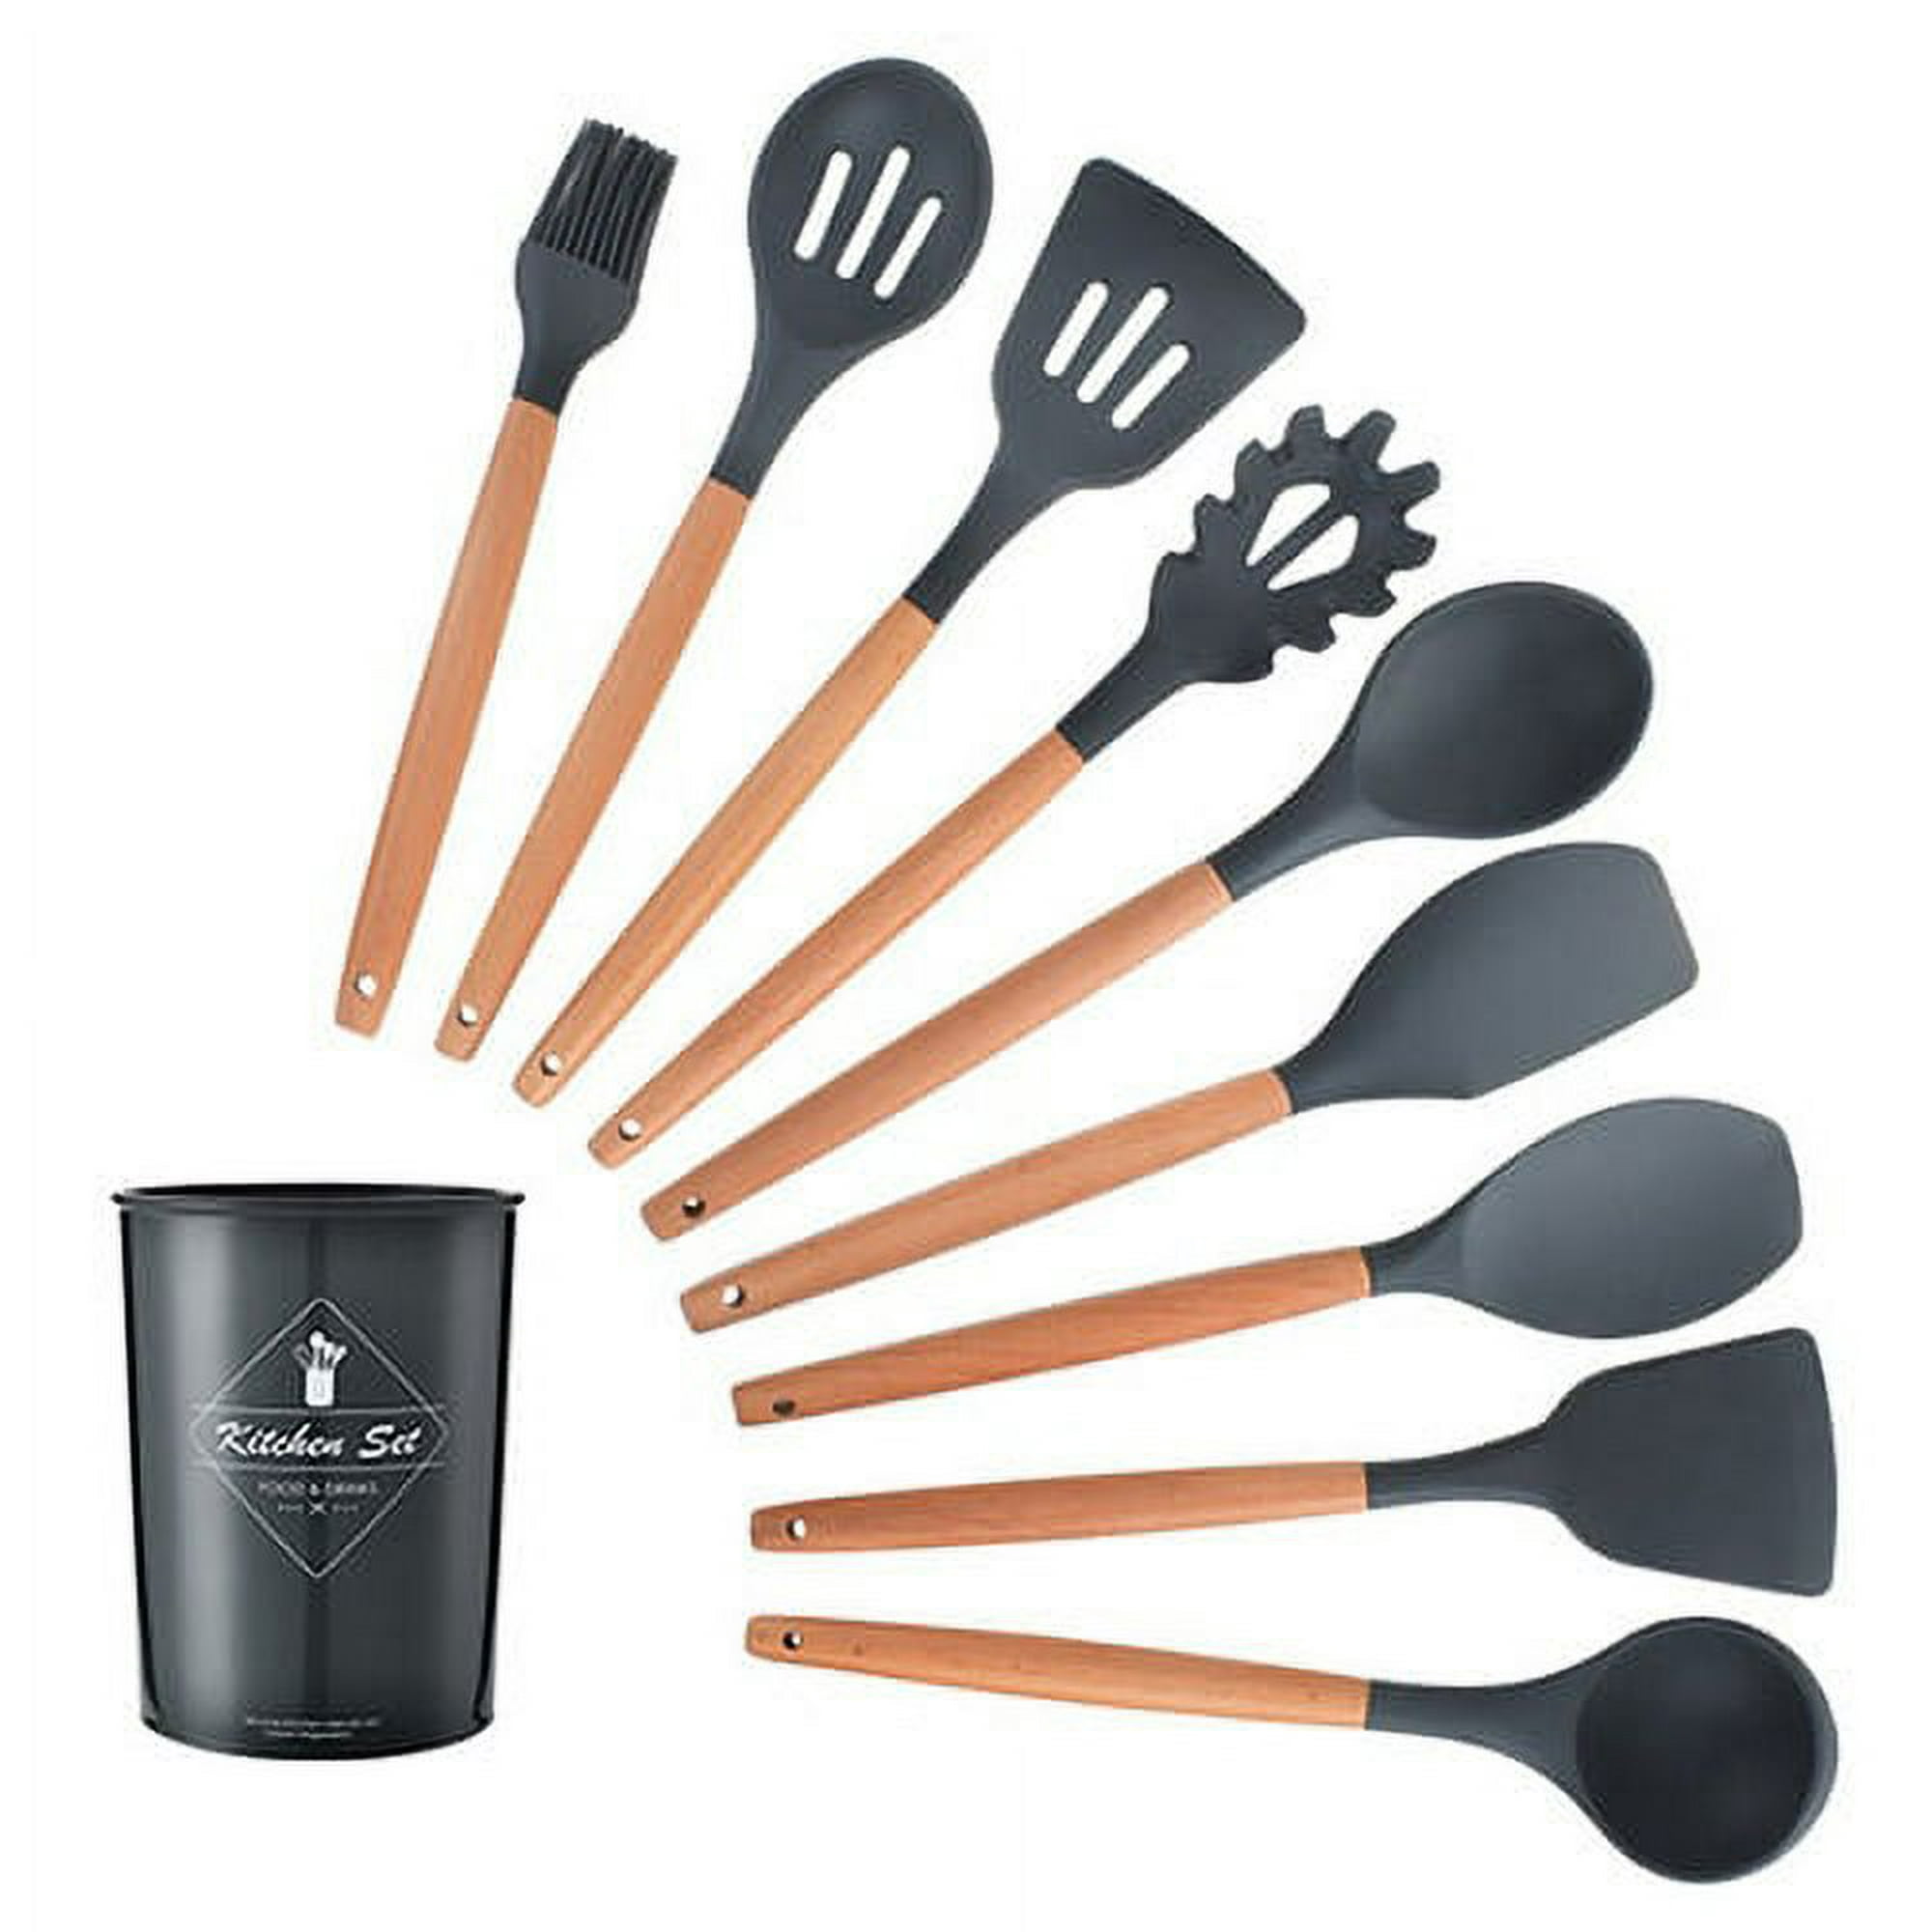 Juego de utensilios de cocina de silicona, 12 piezas antiadherentes,  utensilios de cocina para horne…Ver más Juego de utensilios de cocina de